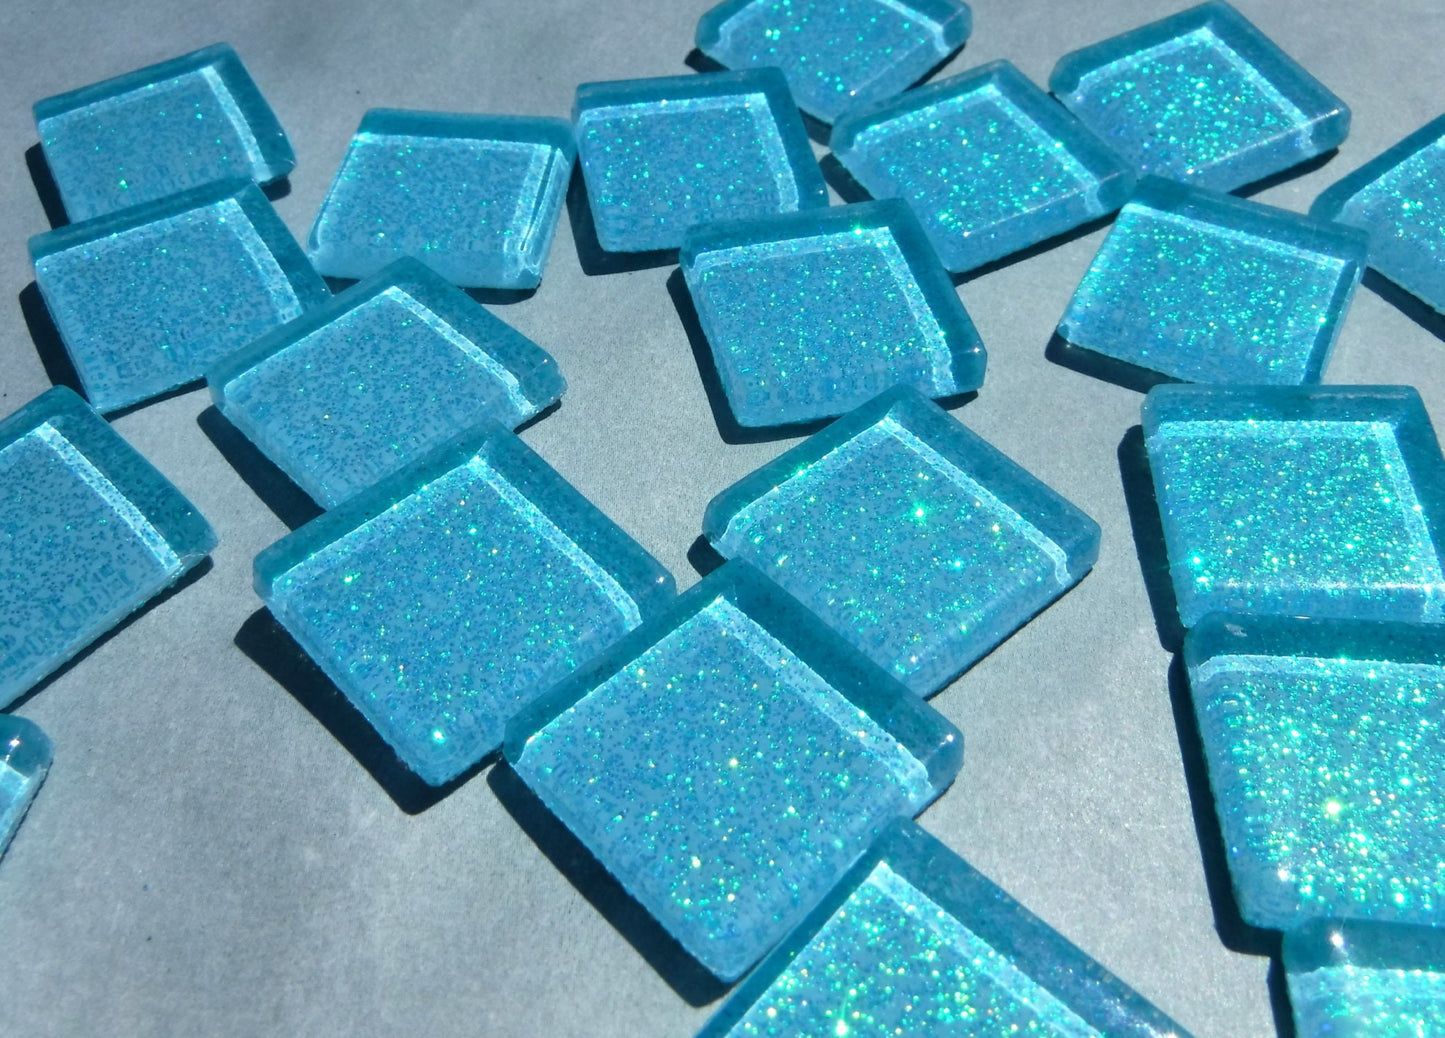 Poolside Blue Glitter Tiles - 20mm Mosaic Tiles - 25 Metallic Glass Tiles